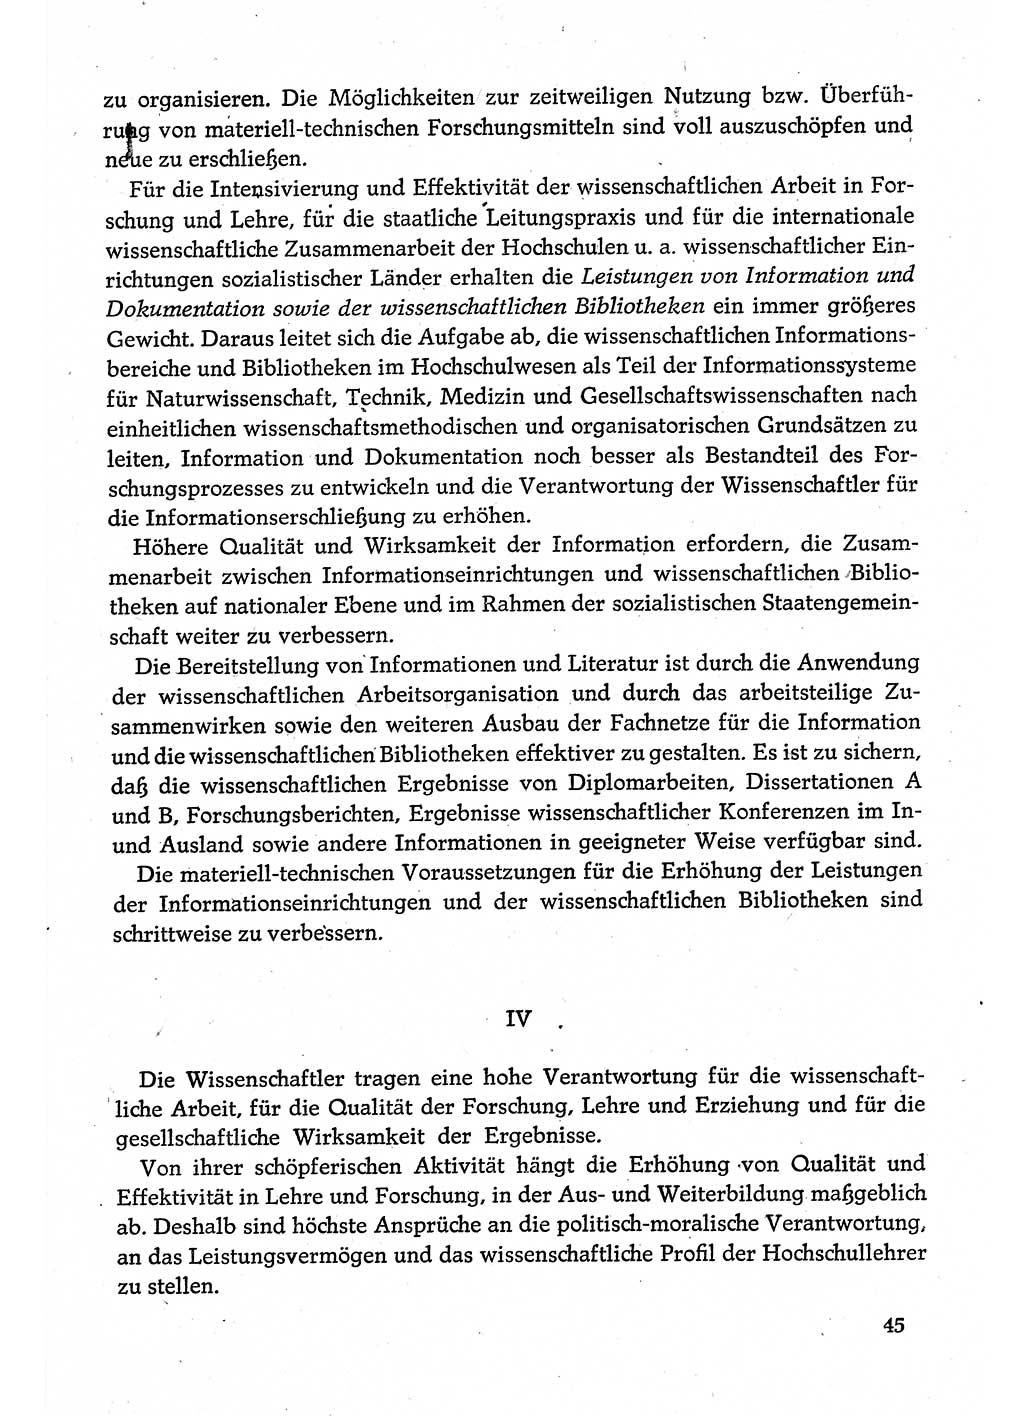 Dokumente der Sozialistischen Einheitspartei Deutschlands (SED) [Deutsche Demokratische Republik (DDR)] 1980-1981, Seite 45 (Dok. SED DDR 1980-1981, S. 45)